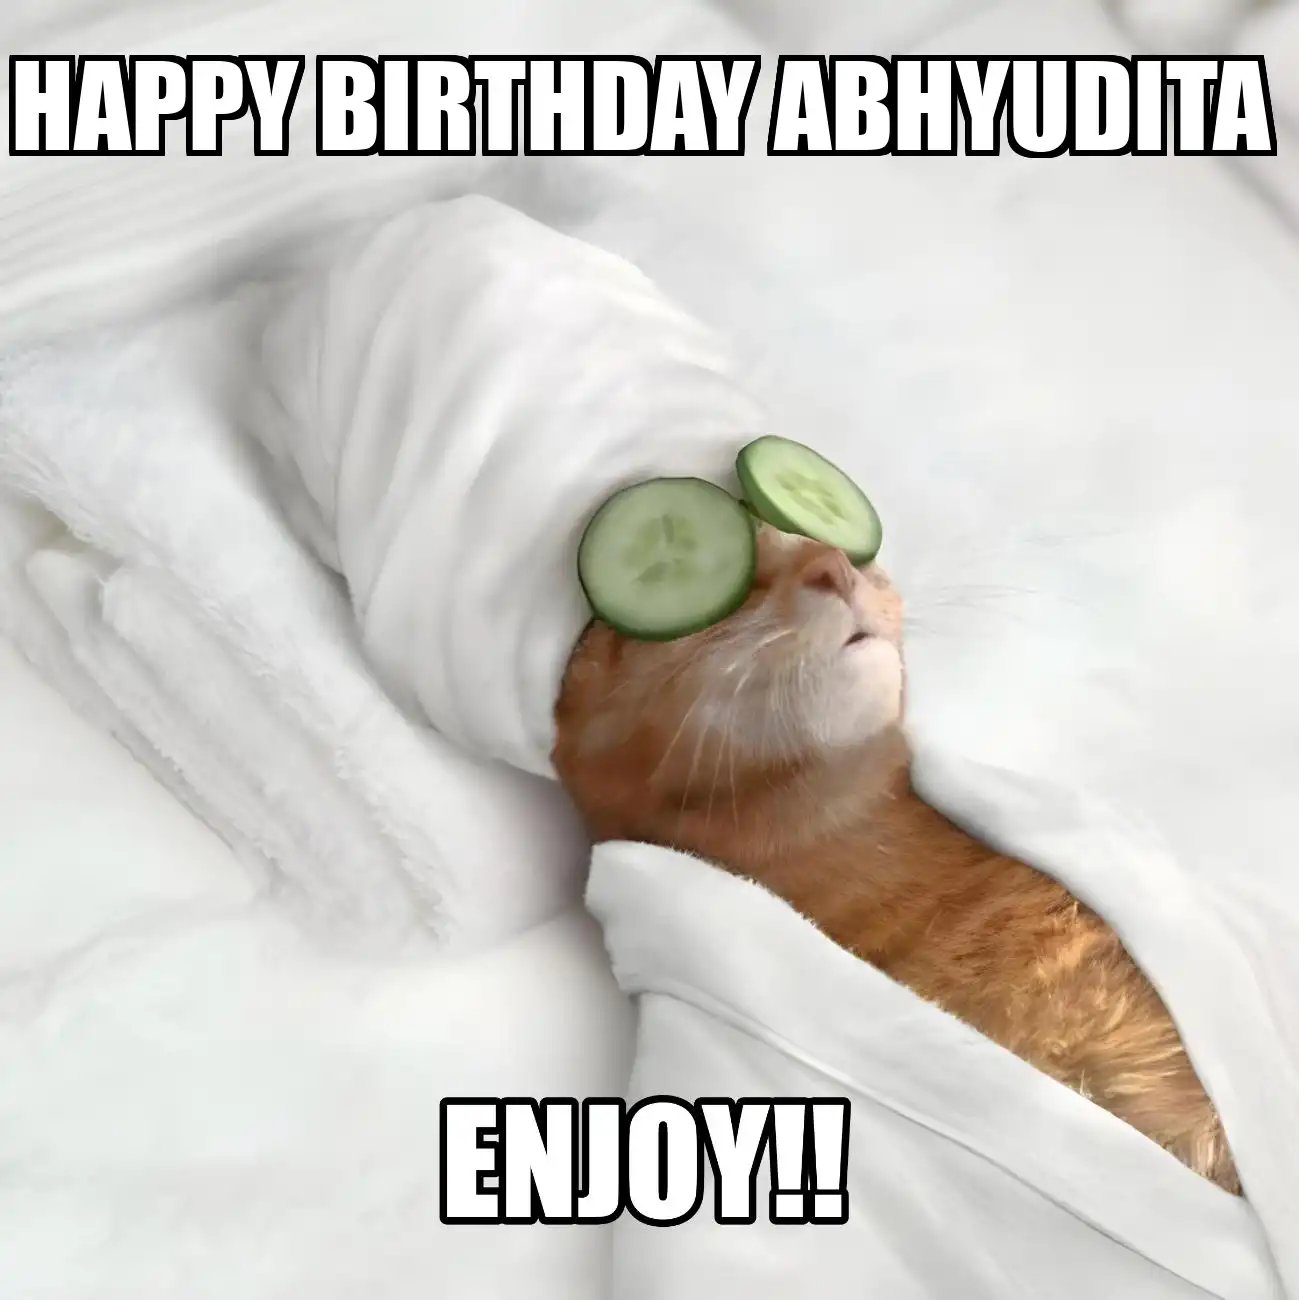 Happy Birthday Abhyudita Enjoy Cat Meme